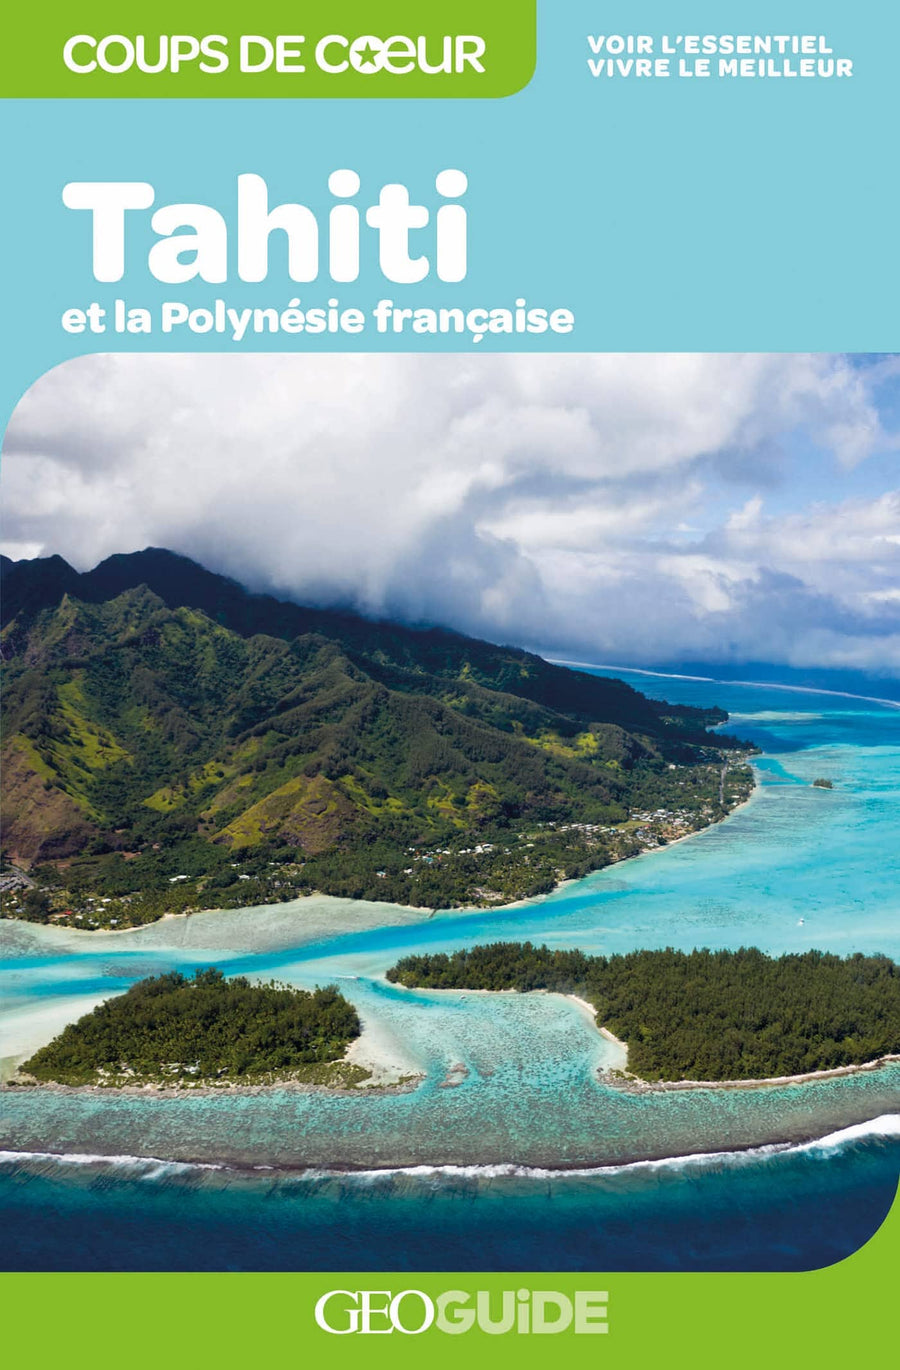 Géoguide (coups de coeur) - Tahiti et la Polynésie française | Gallimard guide de voyage Gallimard 